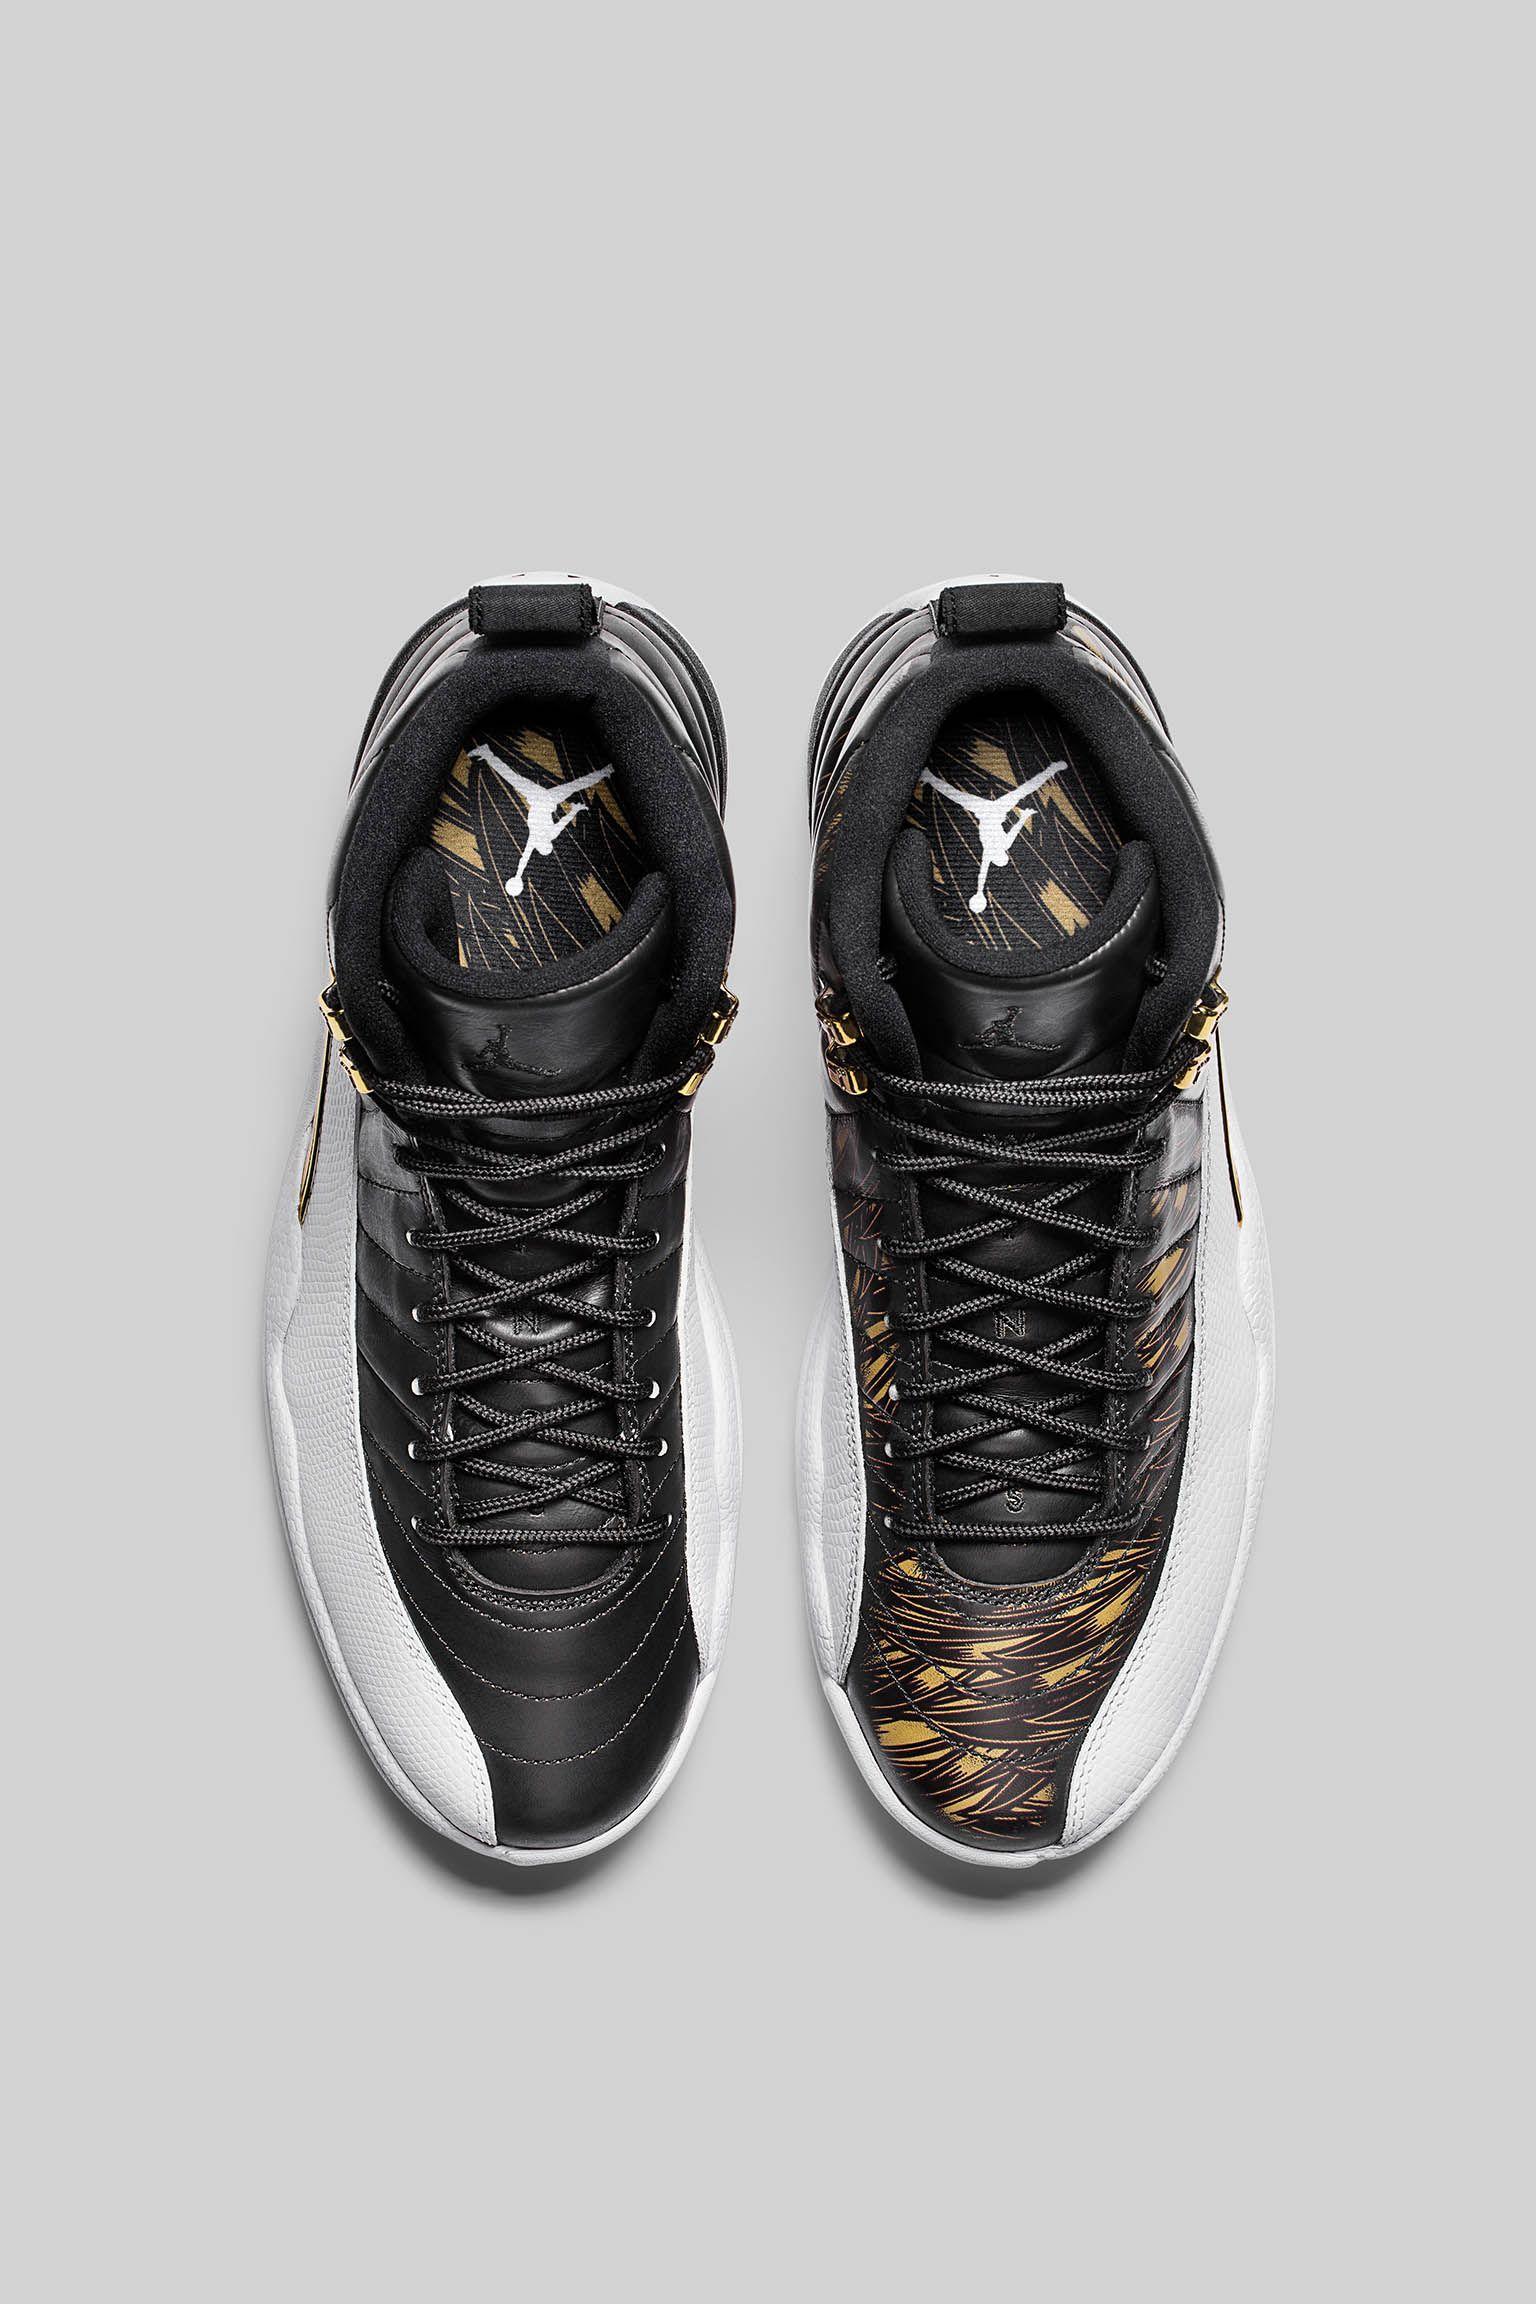 Air Jordan 12 Retro 'Wings' Release Date. Nike⁠+ SNKRS